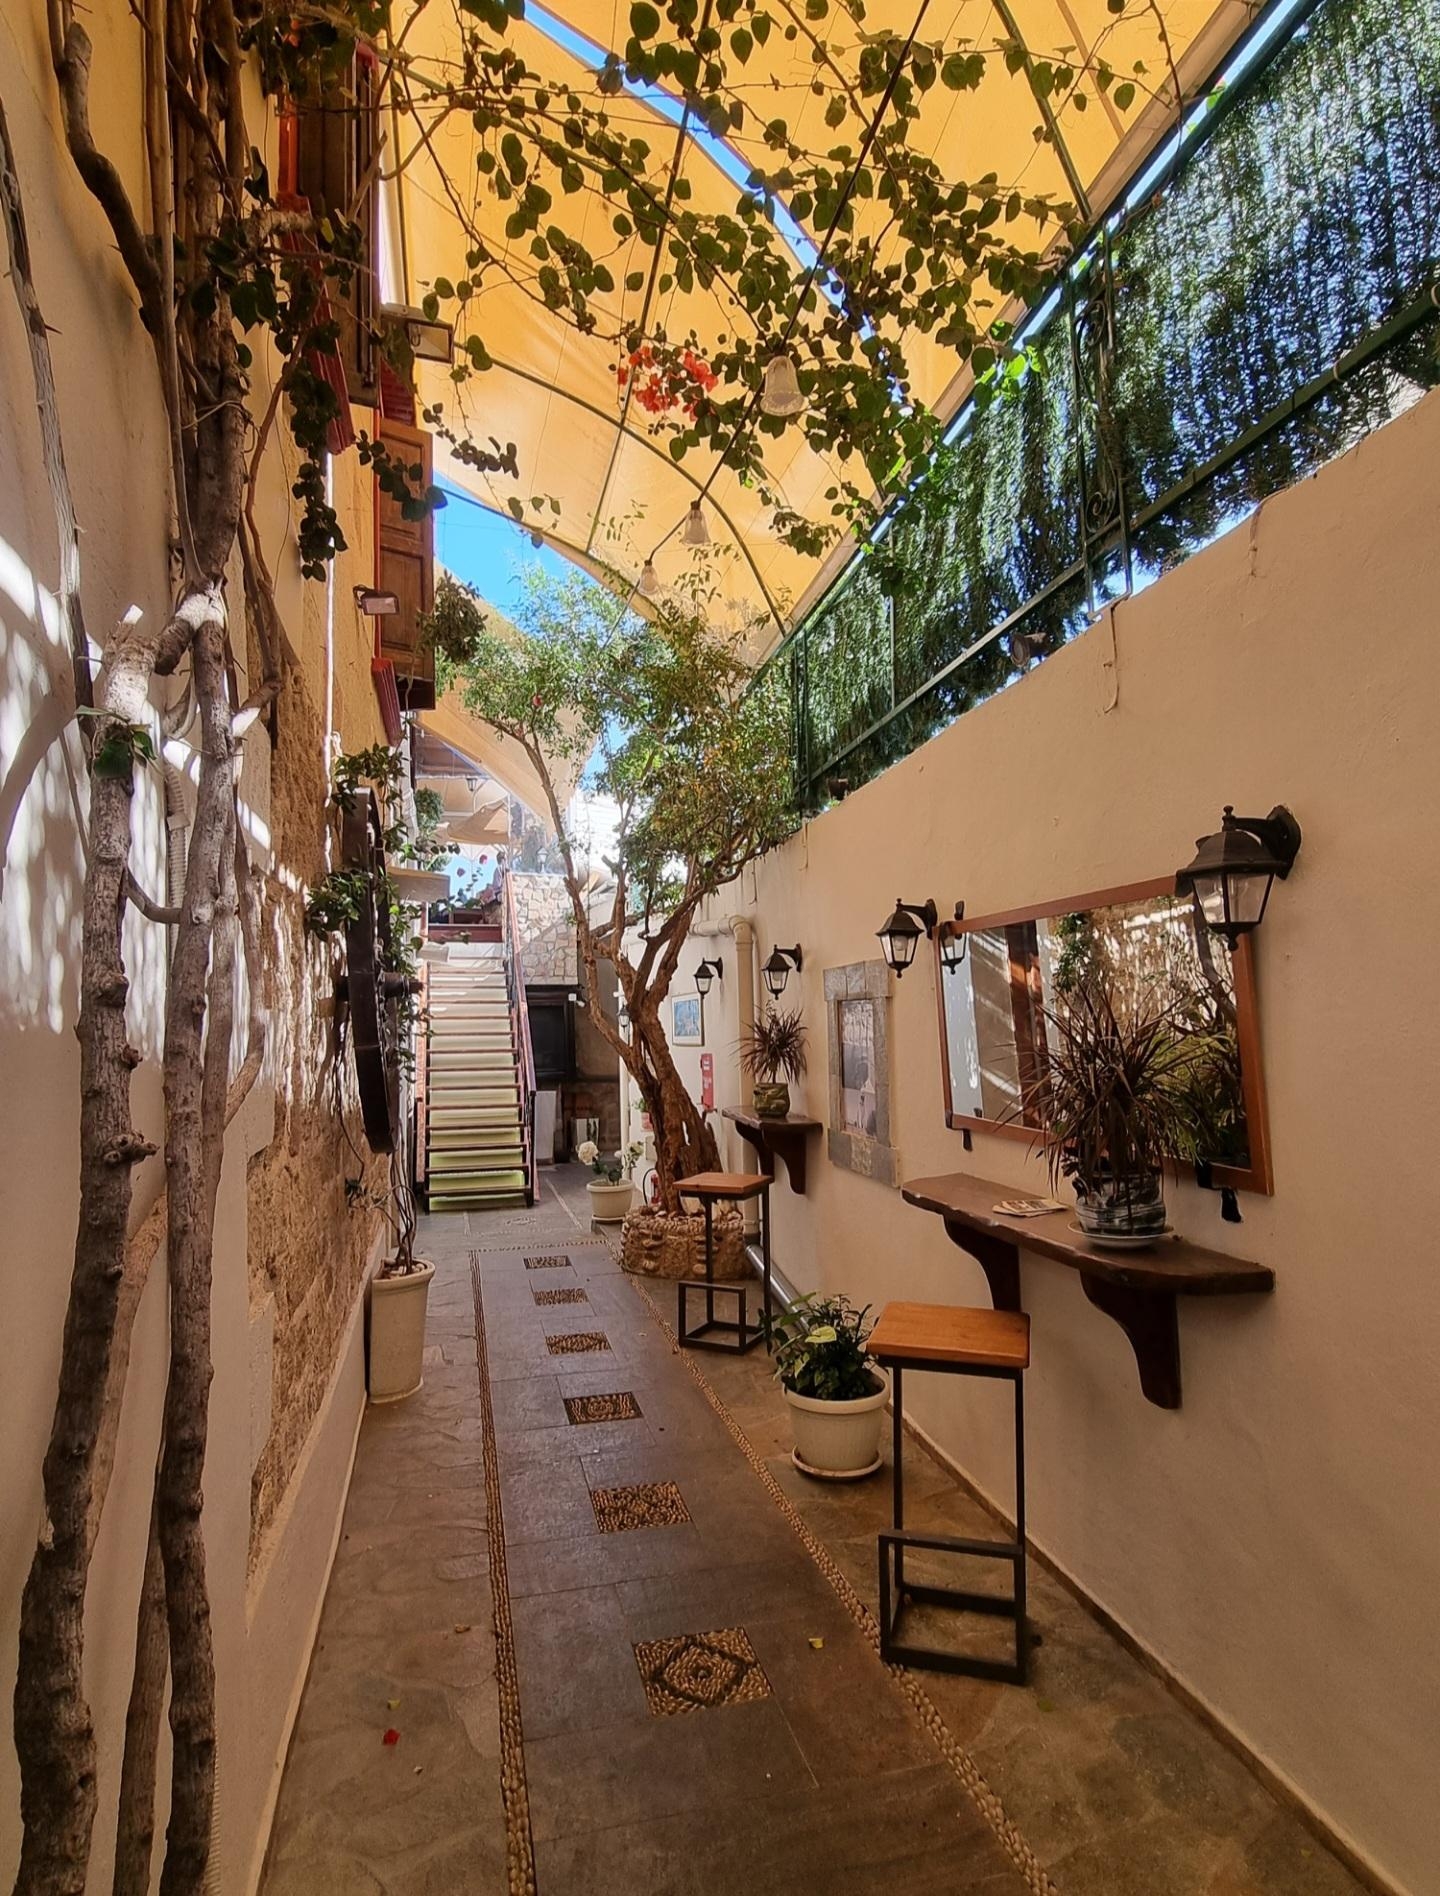 Liebe diese kleinen, besonderen Plätze zum verweilen..😇 #altstadt von #rhodos #mediterran #altbau #vintage #outdoor 